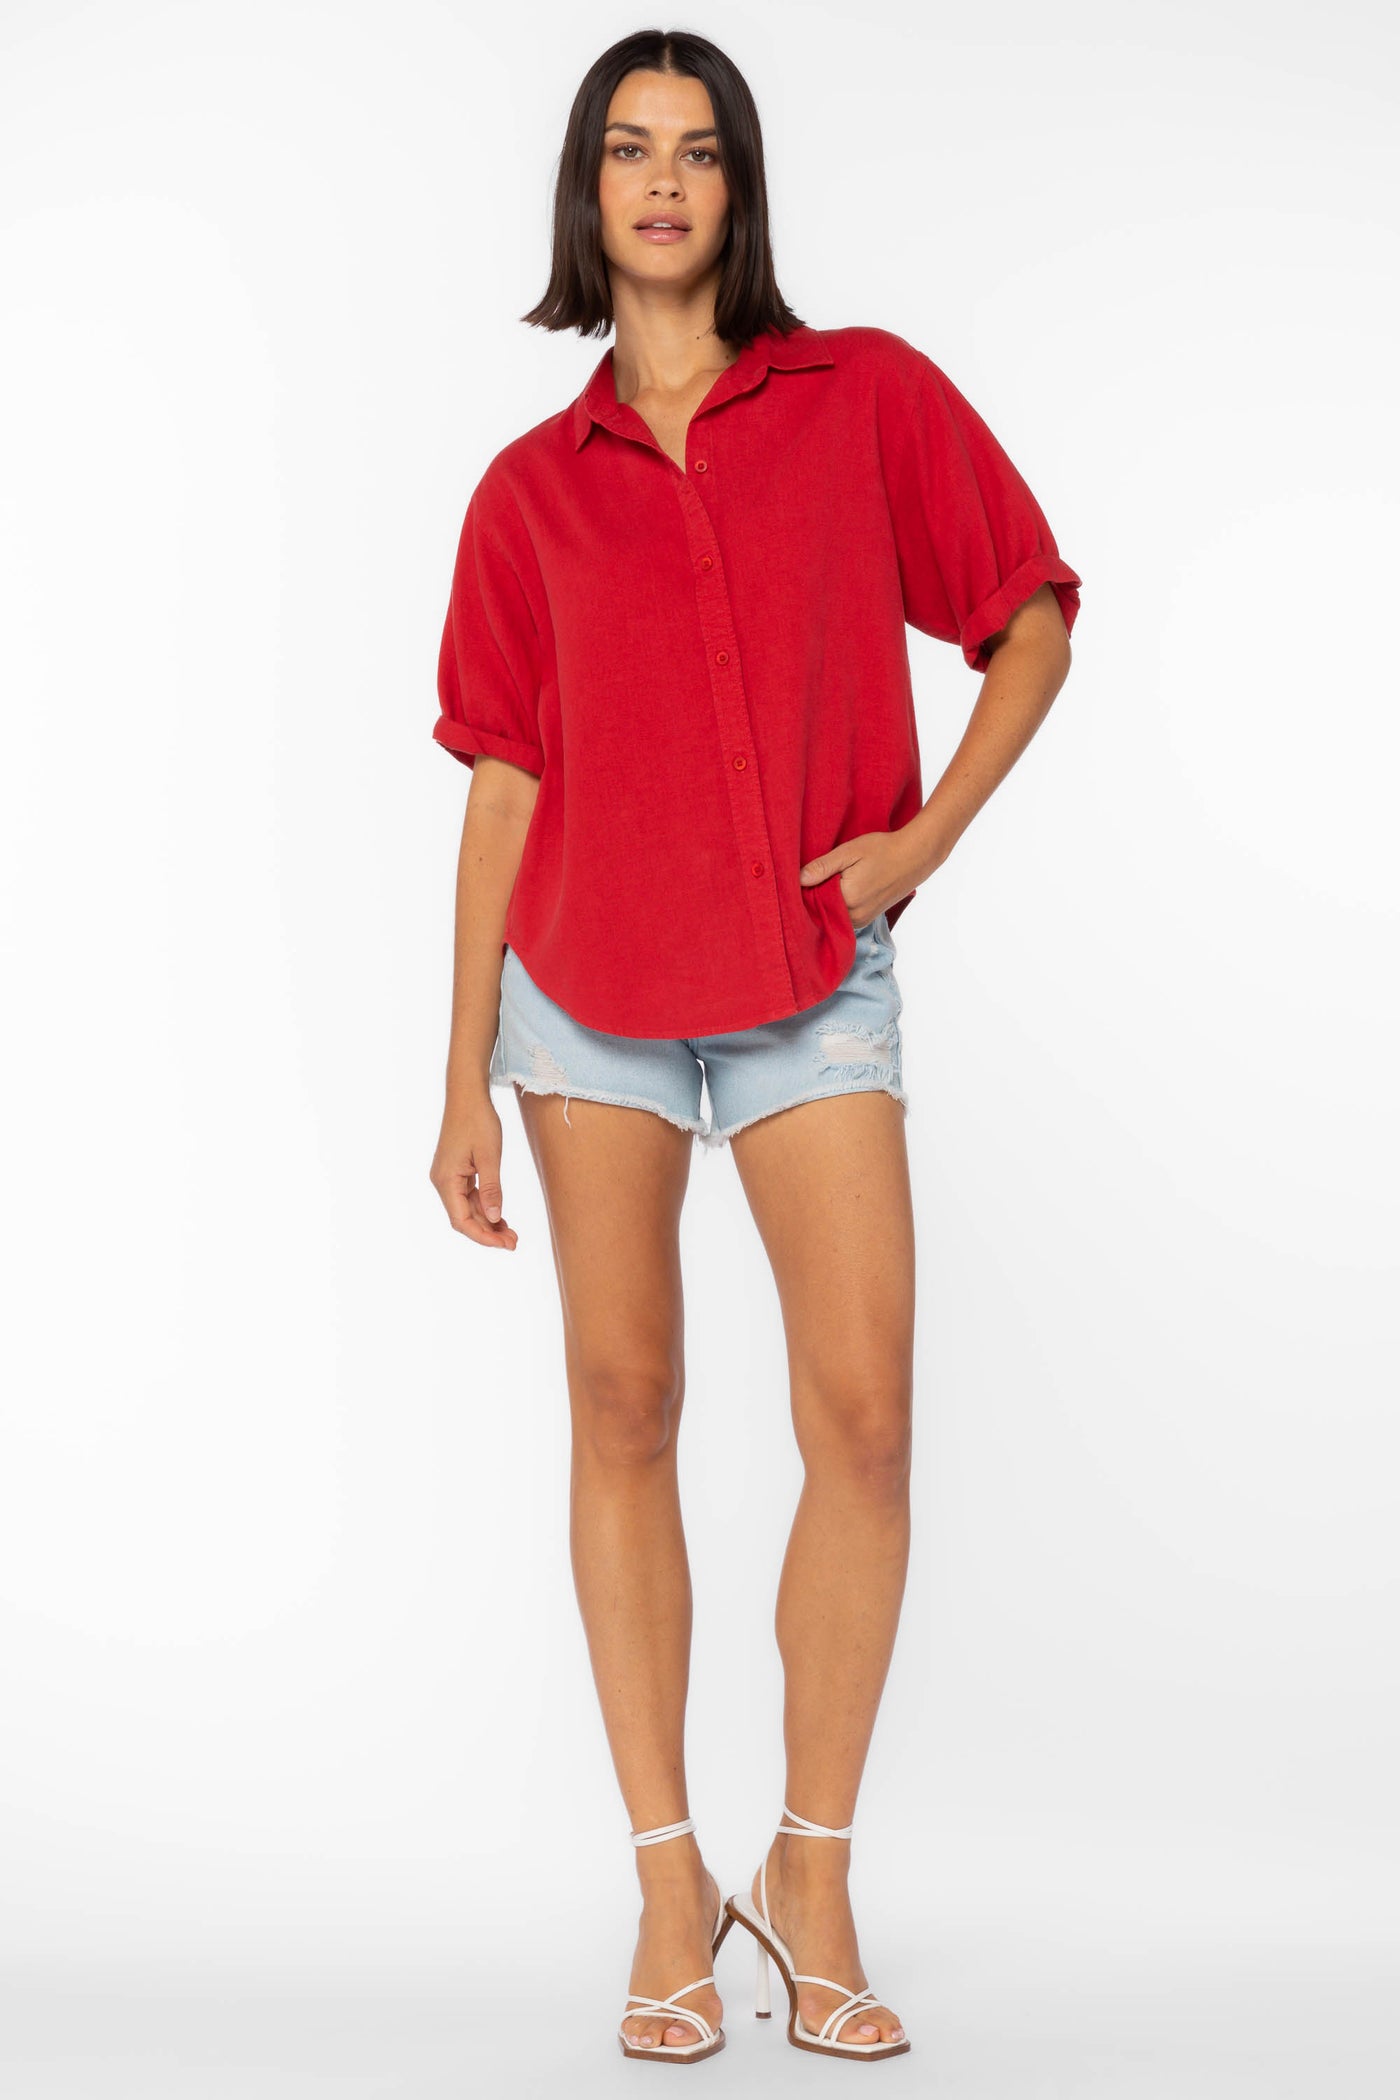 Barley Red Shirt - Tops - Velvet Heart Clothing